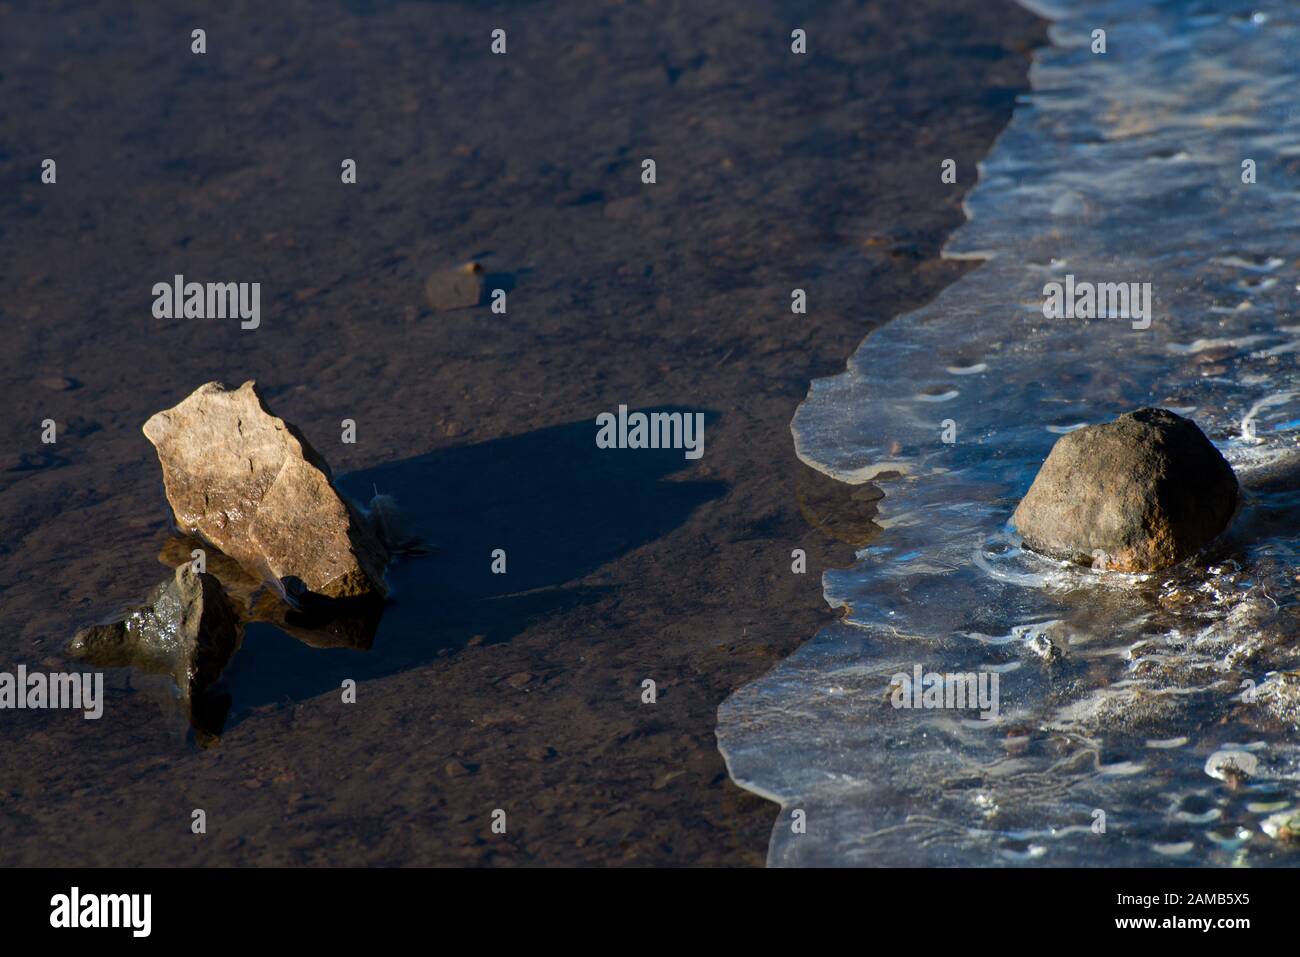 Klassisches und minimales Bild von Wasser und Eis aus Stein, das in Nahaufnahme gefangen ist und wunderschönes Licht mit der Sonne, die sowohl Steine als auch Eis hervorhebt Stockfoto